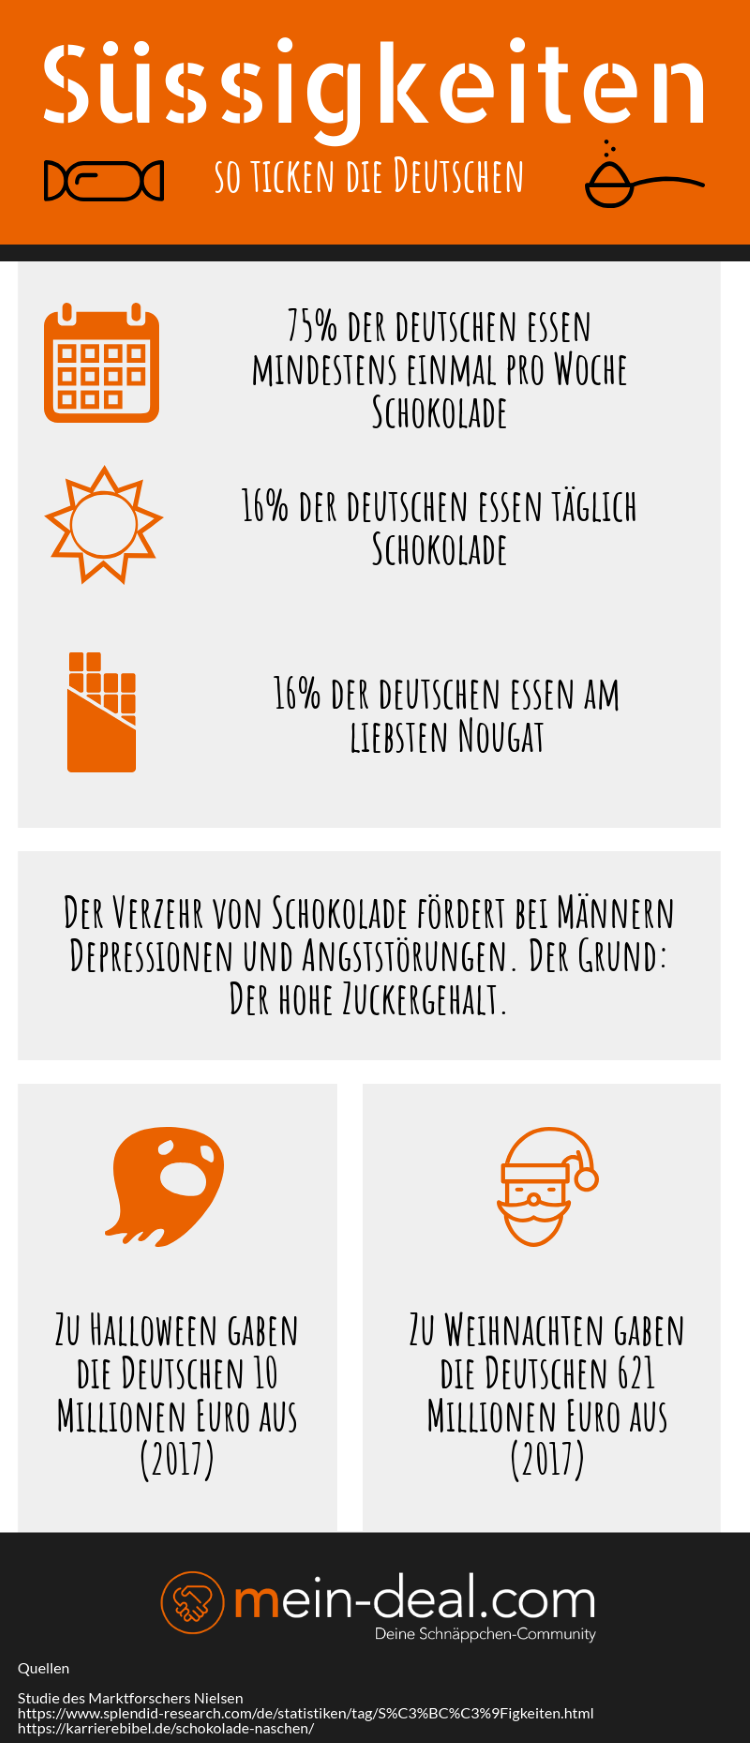 Infografik zum Verzehr von Schokolade deutscher Bürger.